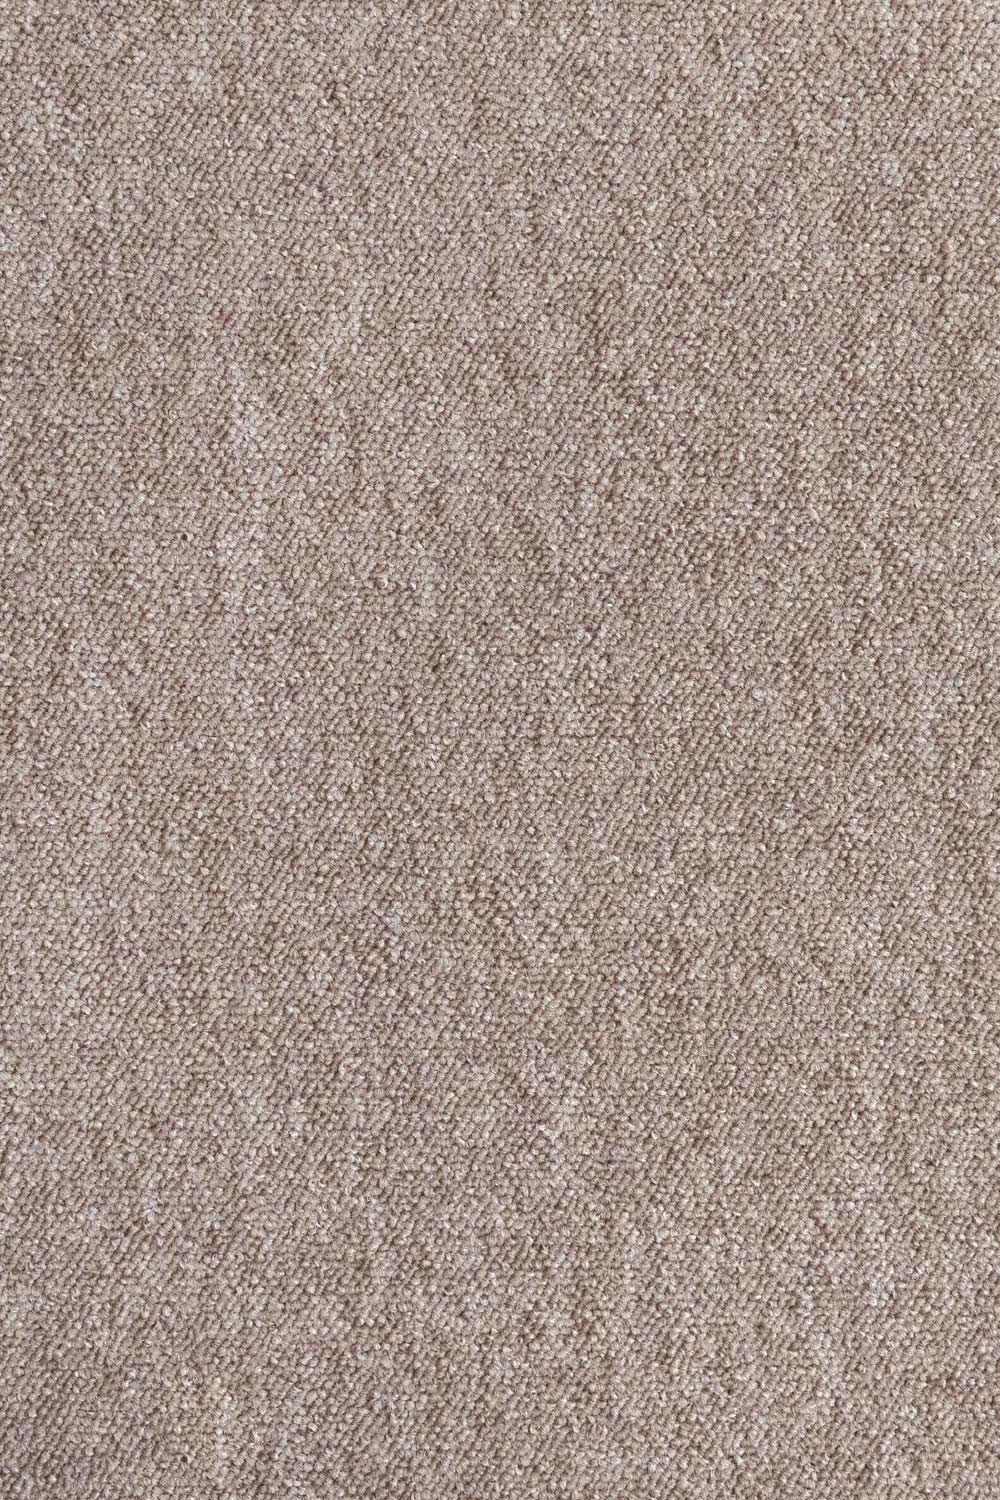 Metrážový koberec Lyon Solid 77